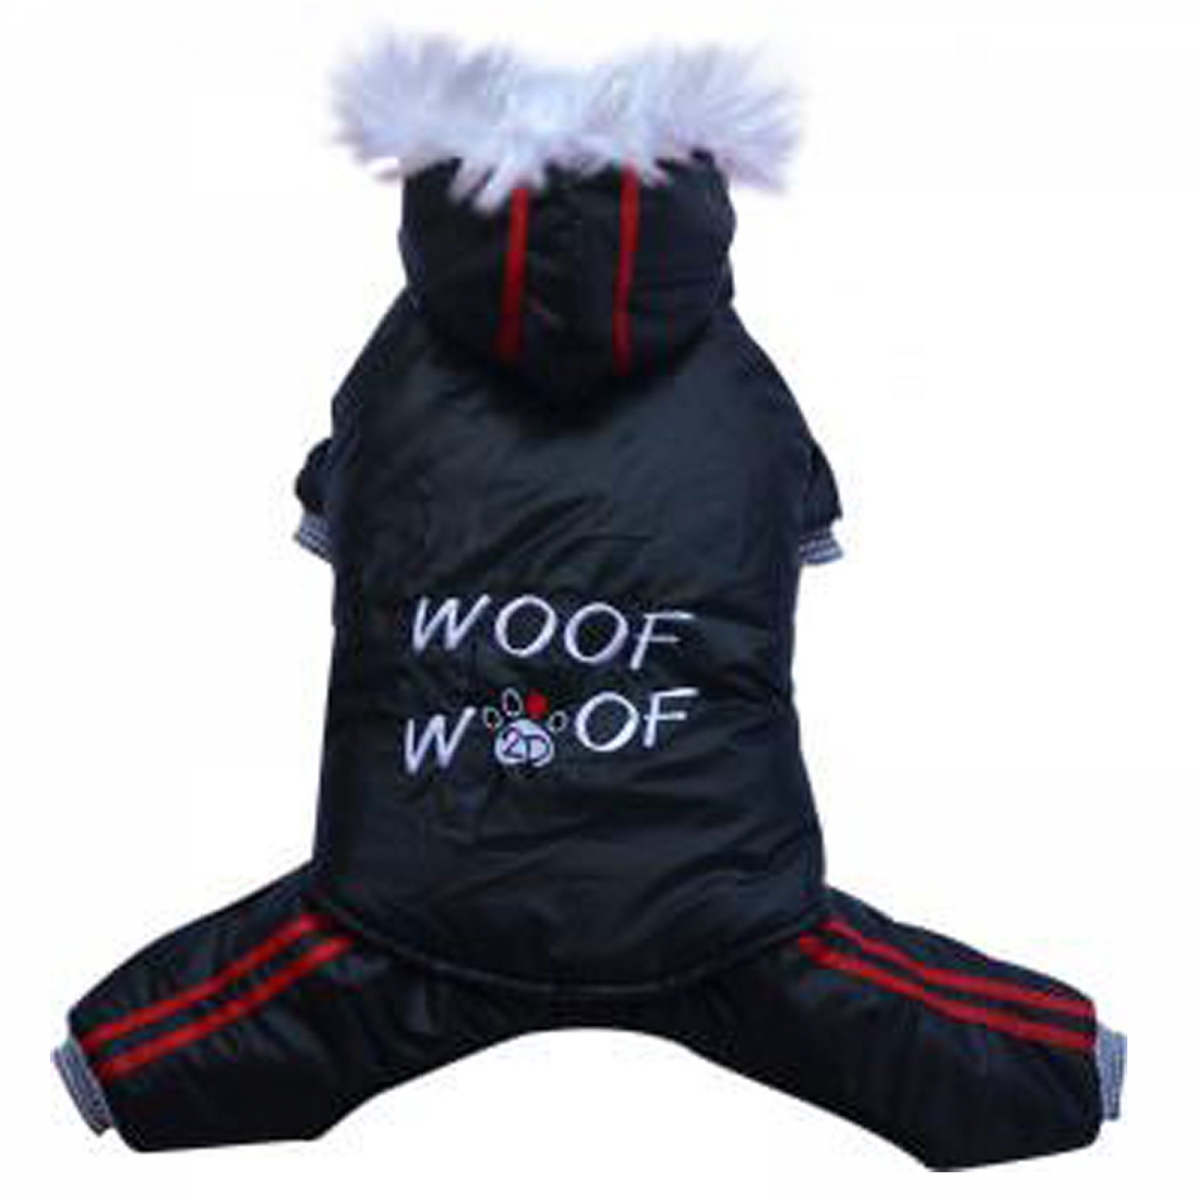 Hunde-Schneeanzug 2in1 Woof schwarz